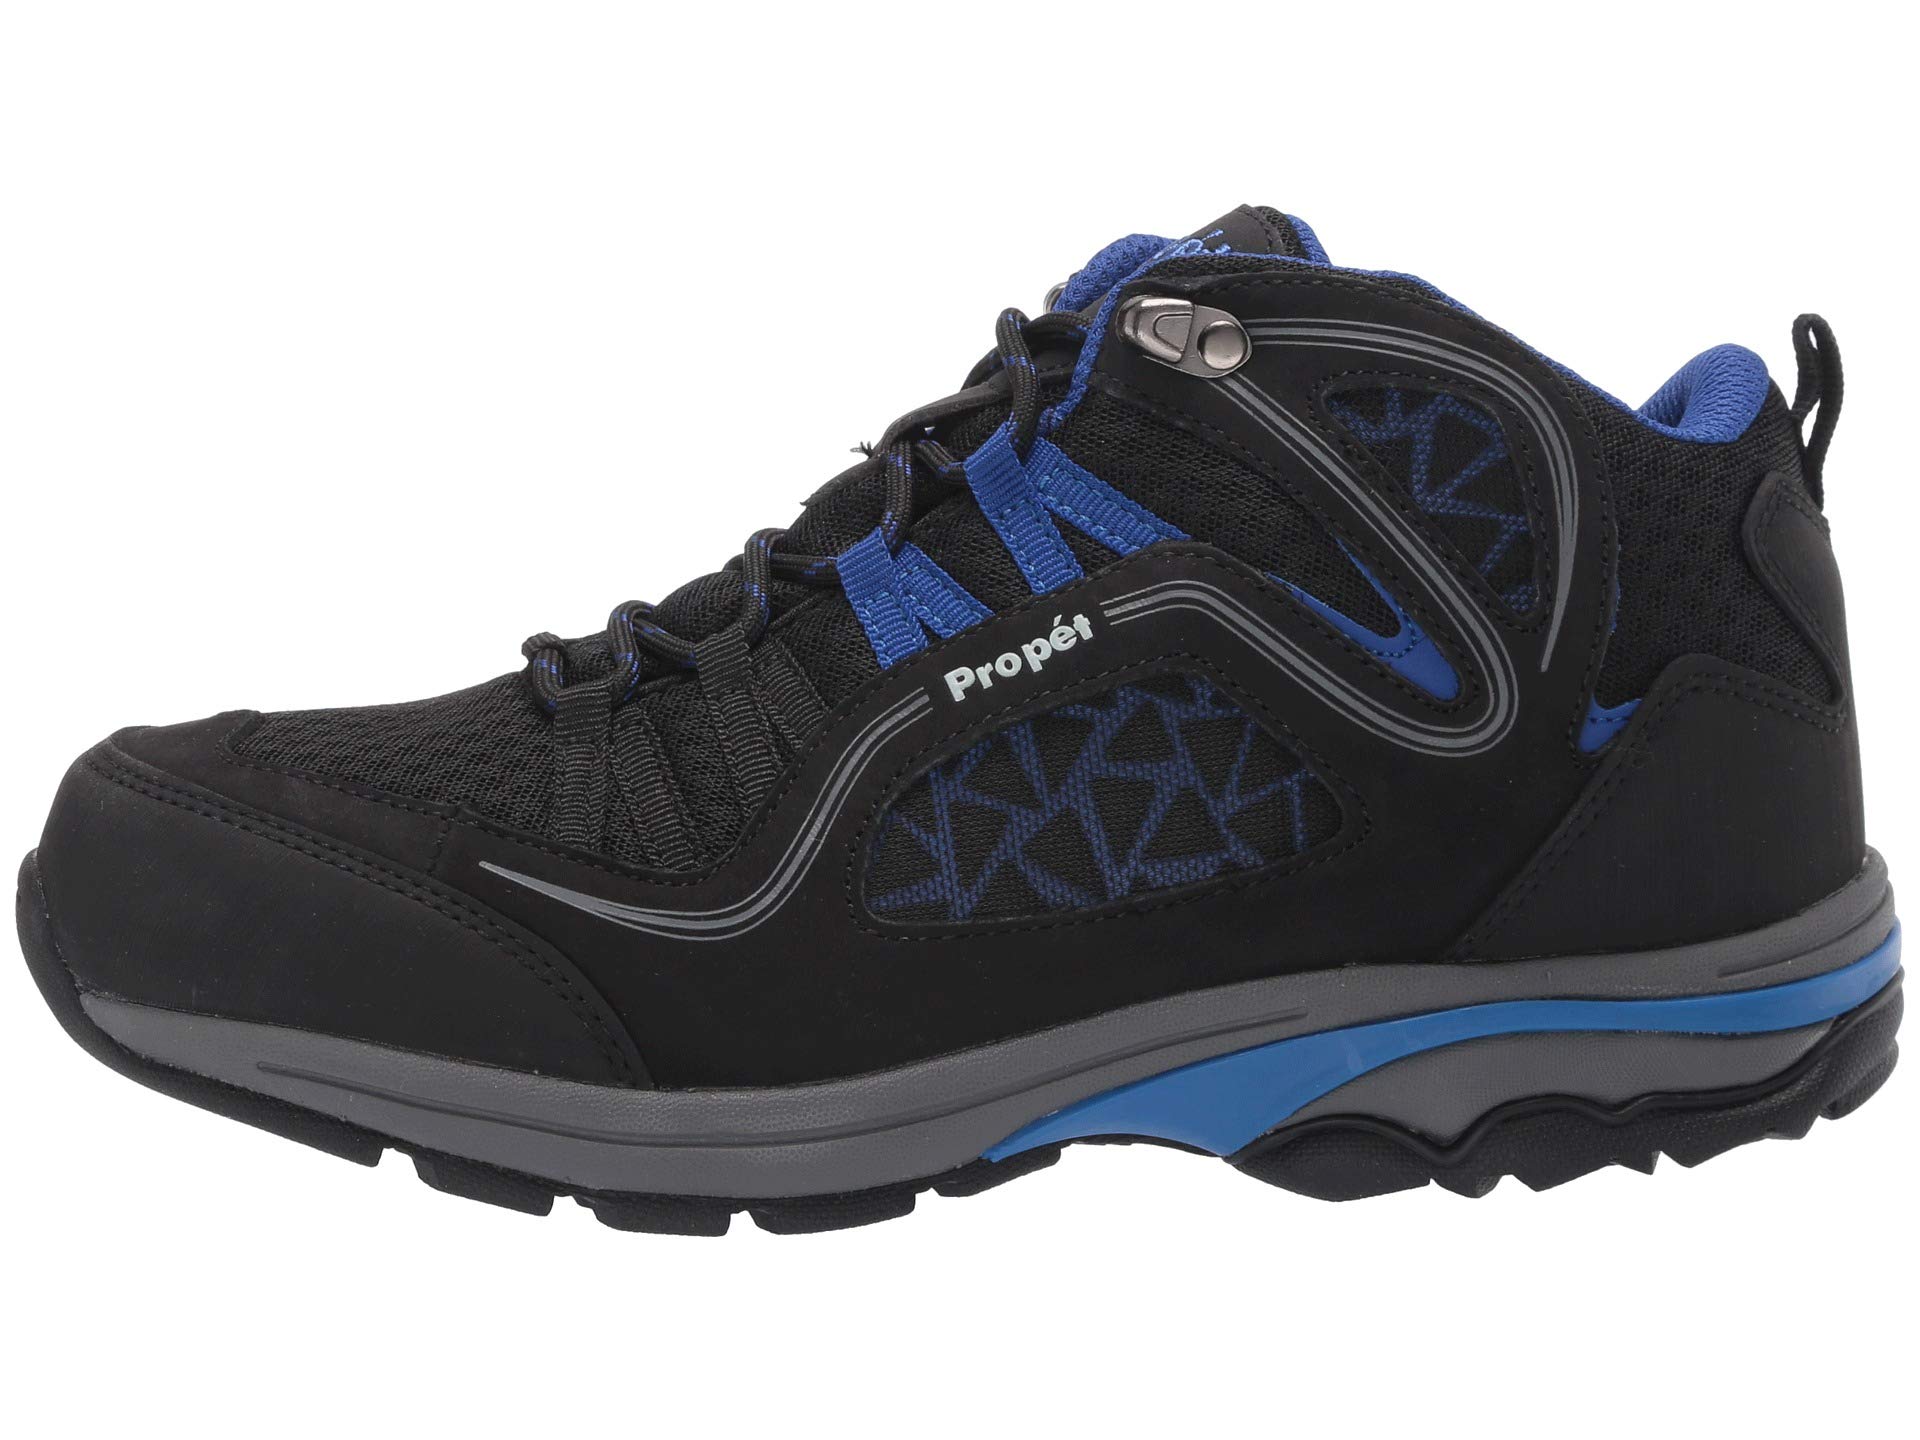 Треккинговые ботинки Propet Propet Peak, черный/синий